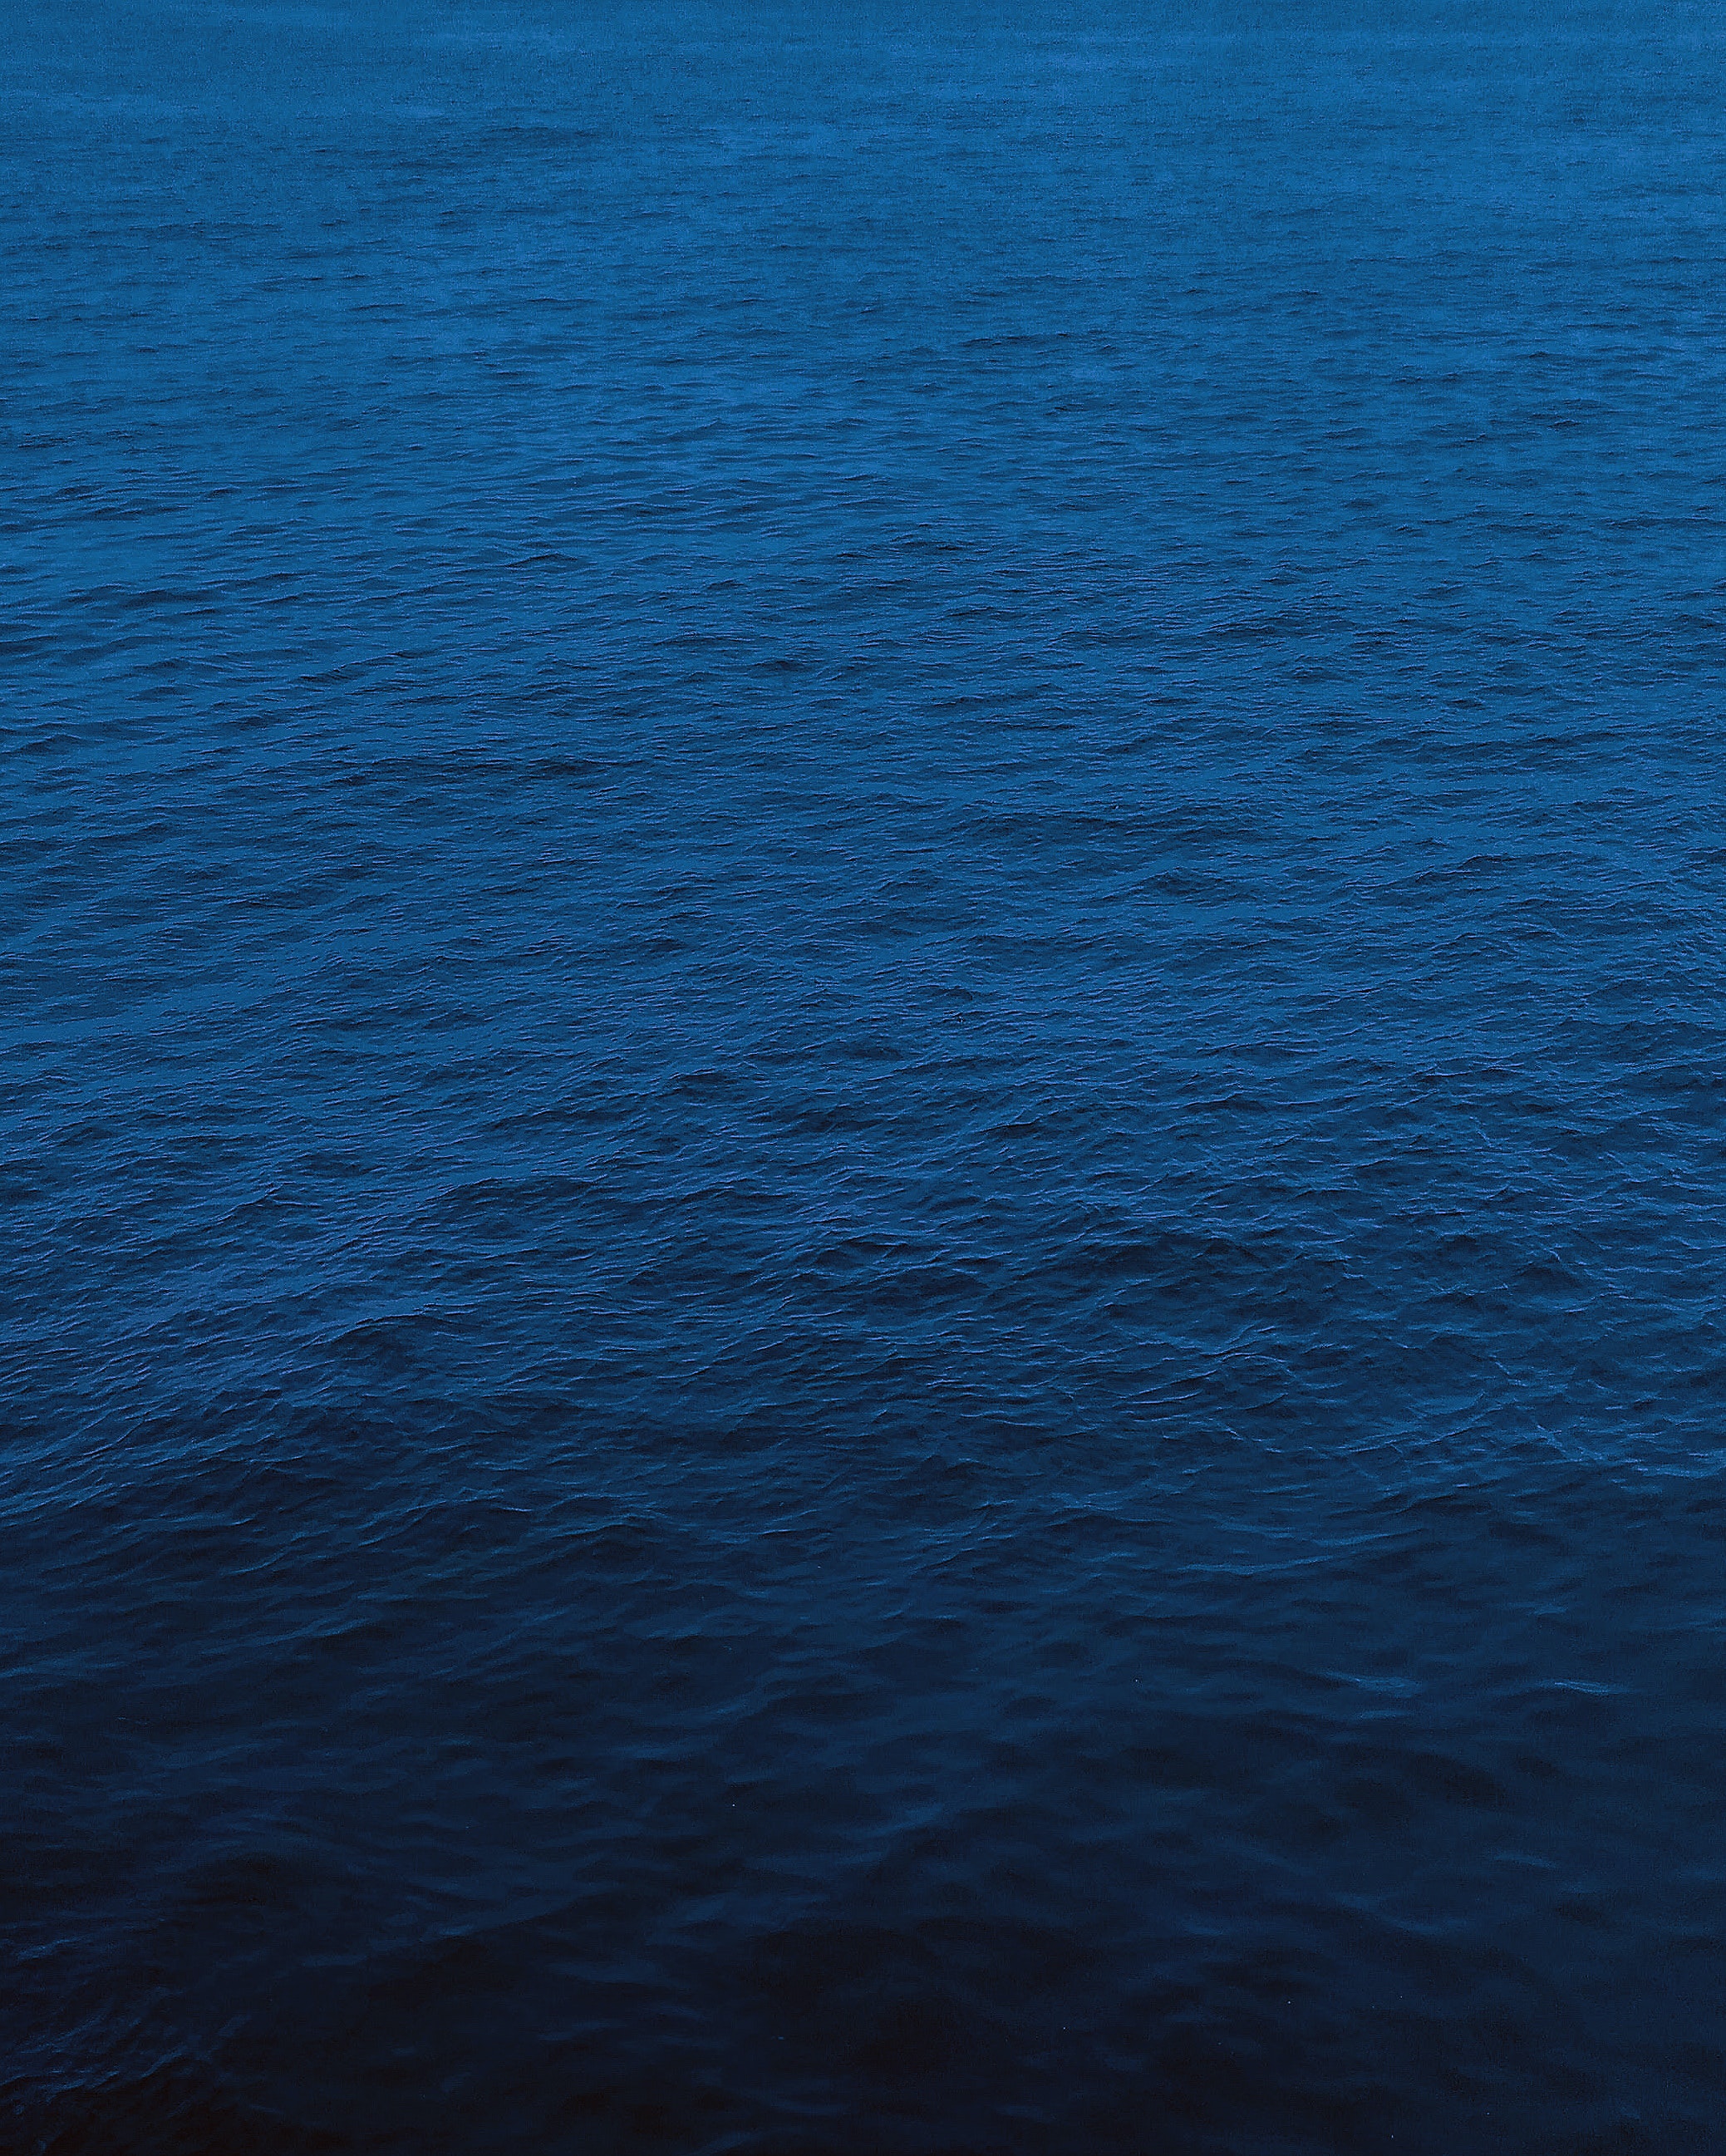 Hình nền động màu xanh dương hải quân là một lựa chọn tuyệt vời để thể hiện sự mạnh mẽ và năng động. Hãy tận hưởng hình ảnh chuyển động của màu xanh dương hải quân và cảm nhận sự tràn đầy năng lượng.